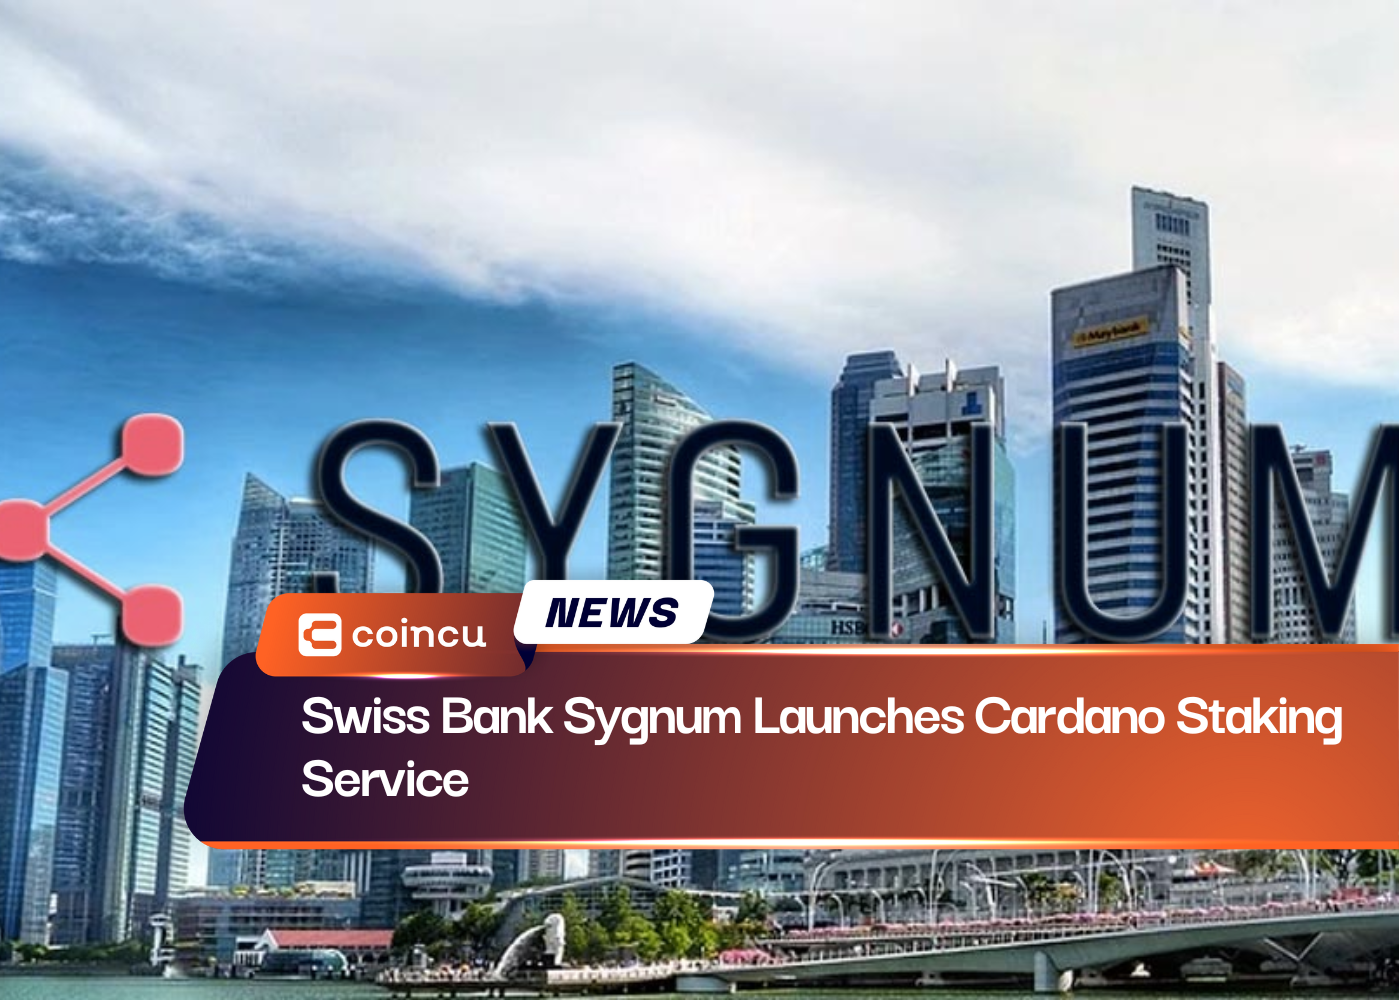 La banque suisse Sygnum lance le service de jalonnement Cardano